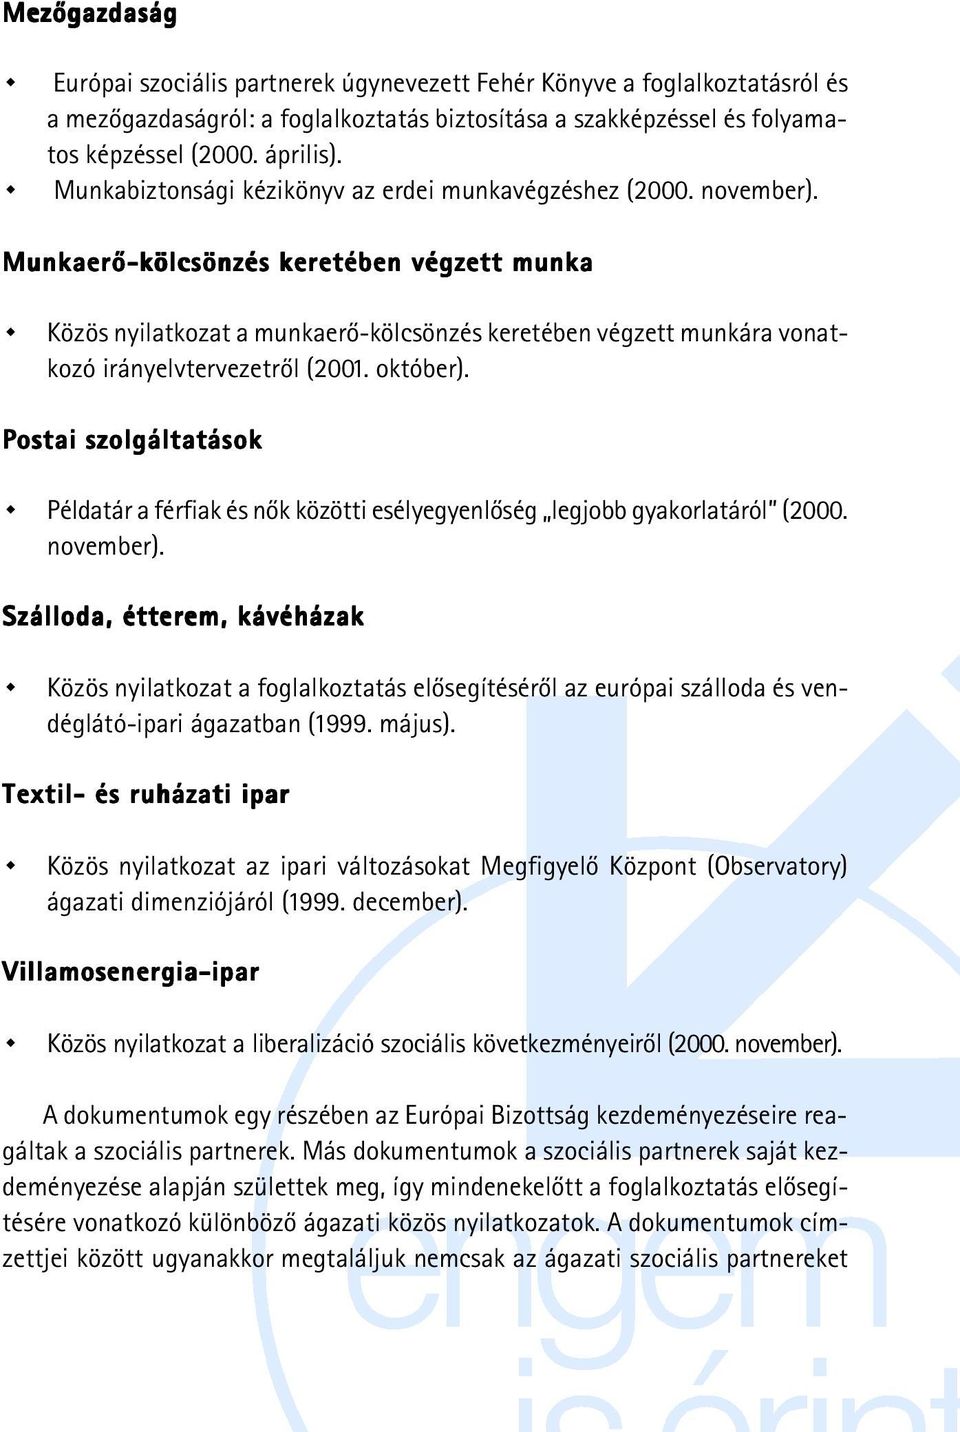 Munkaerõ-kölcsönzés keretében végzett munka Közös nyilatkozat a munkaerõ-kölcsönzés keretében végzett munkára vonatkozó irányelvtervezetrõl (2001. október).